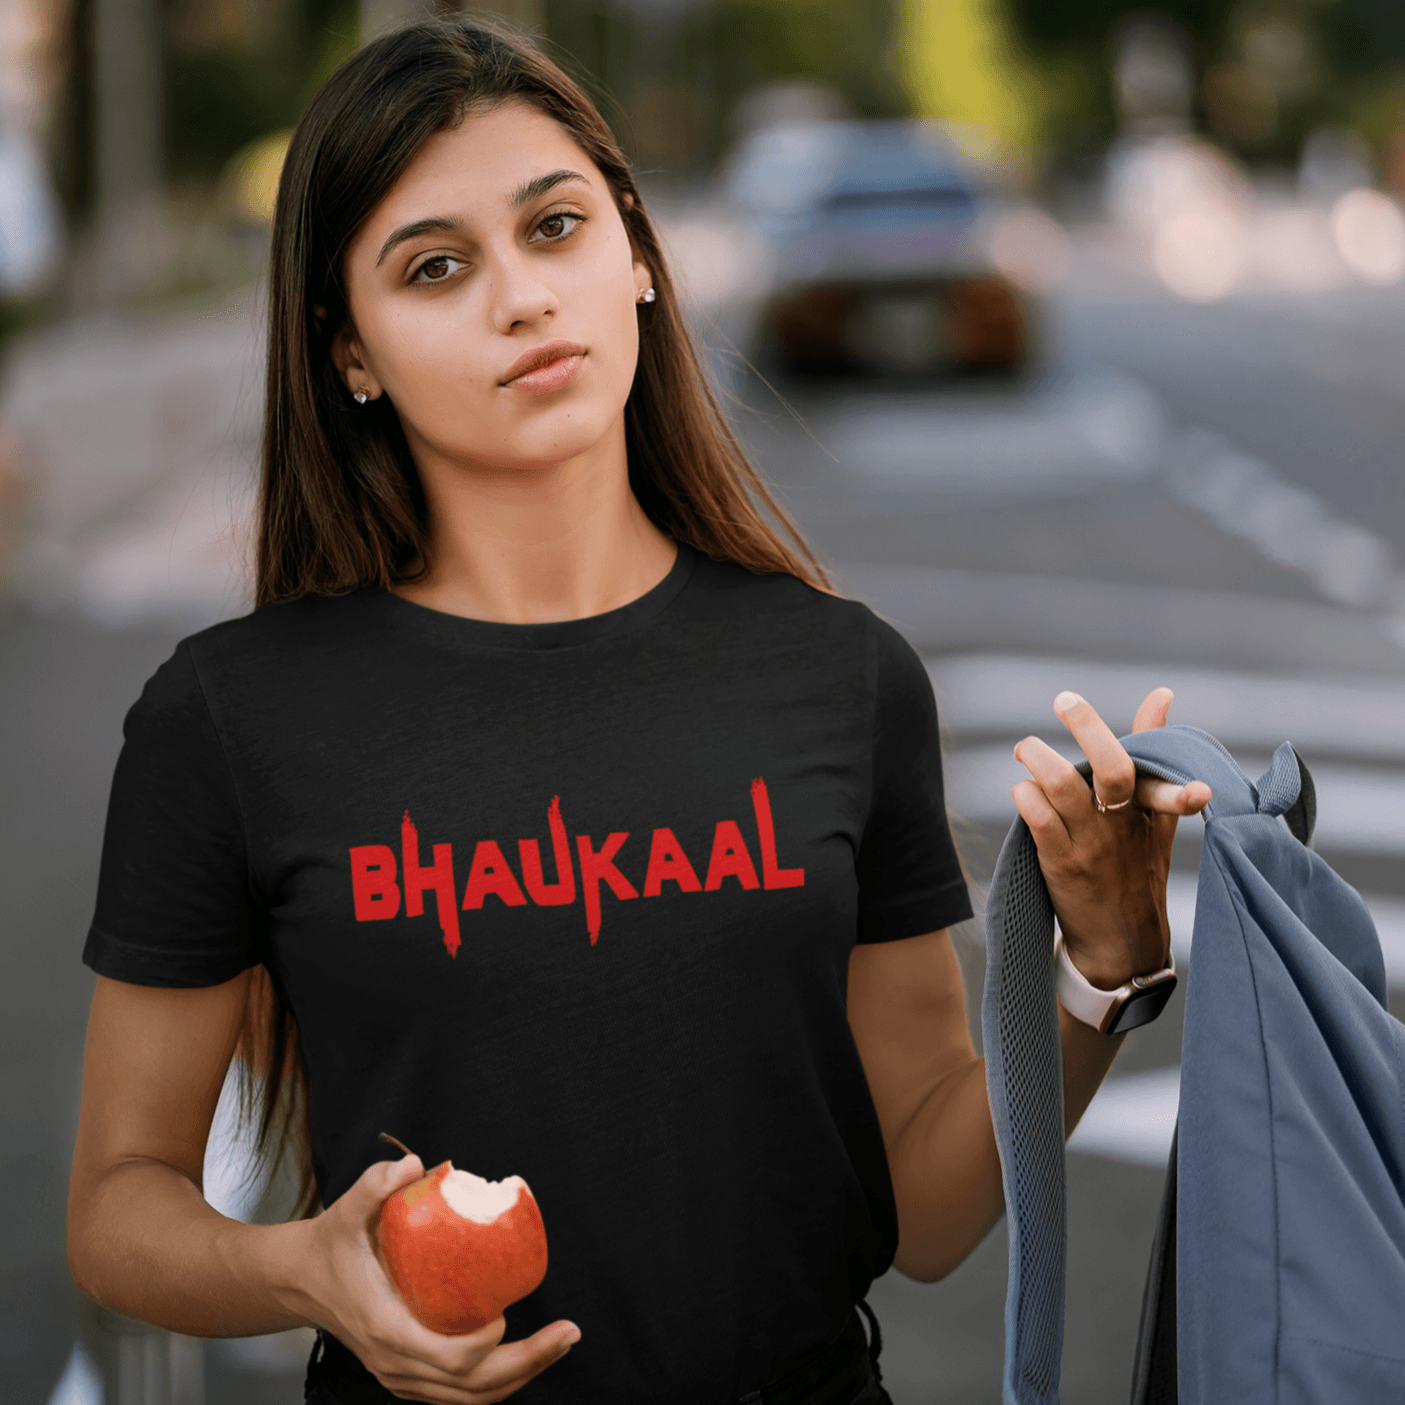 Bhaukaal Women's T-shirt - Ken Adams